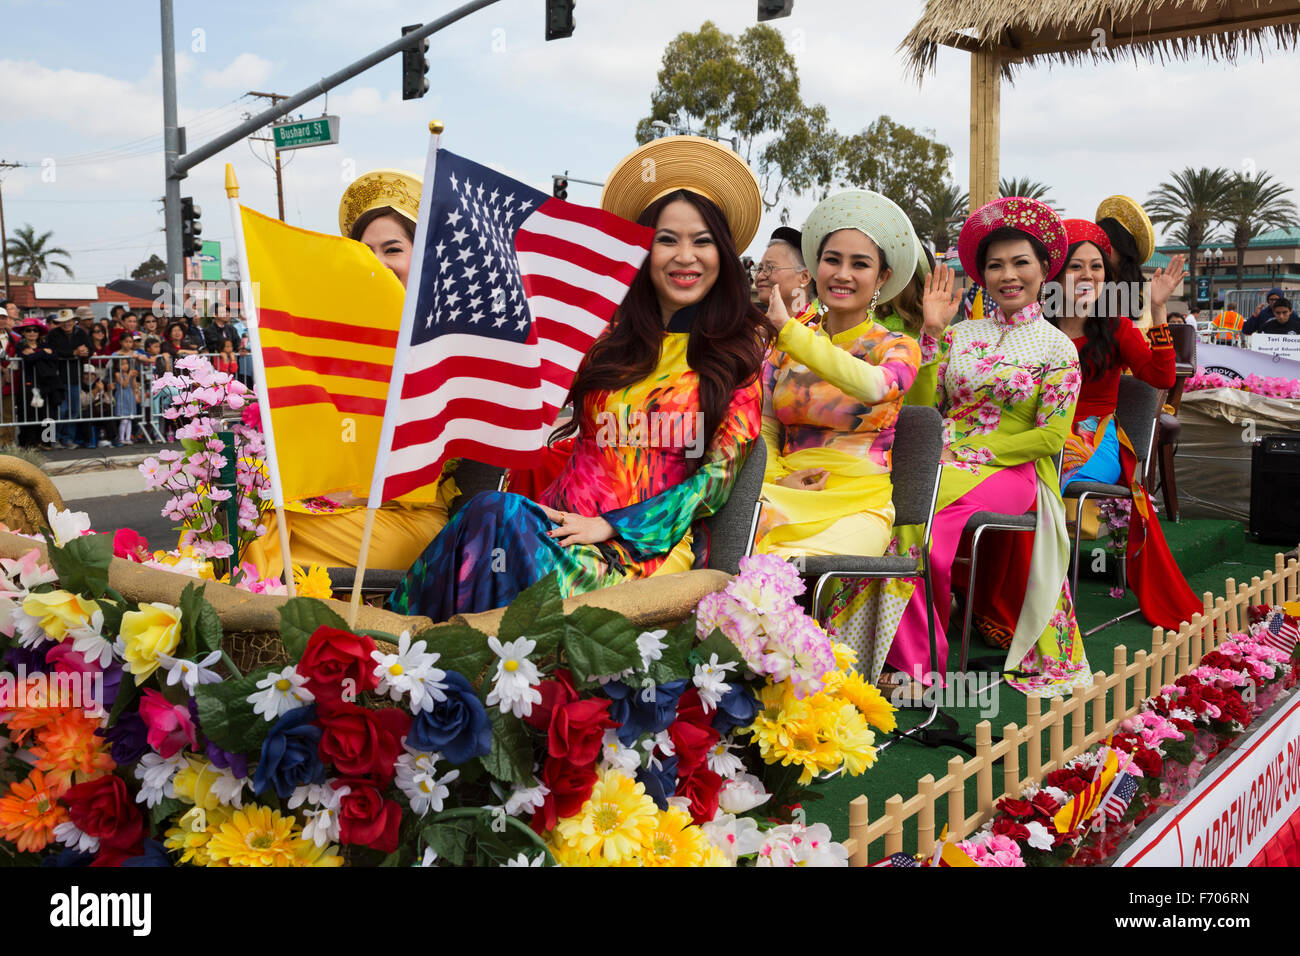 Orange County, City of westminster, Californie du Sud, USA, le 21 février 2015, Little Saigon, Vitenamese-American, TET Communauté célèbre Parade du Nouvel An lunaire du Têt, les femmes sur le flottement avec le drapeau américain Banque D'Images